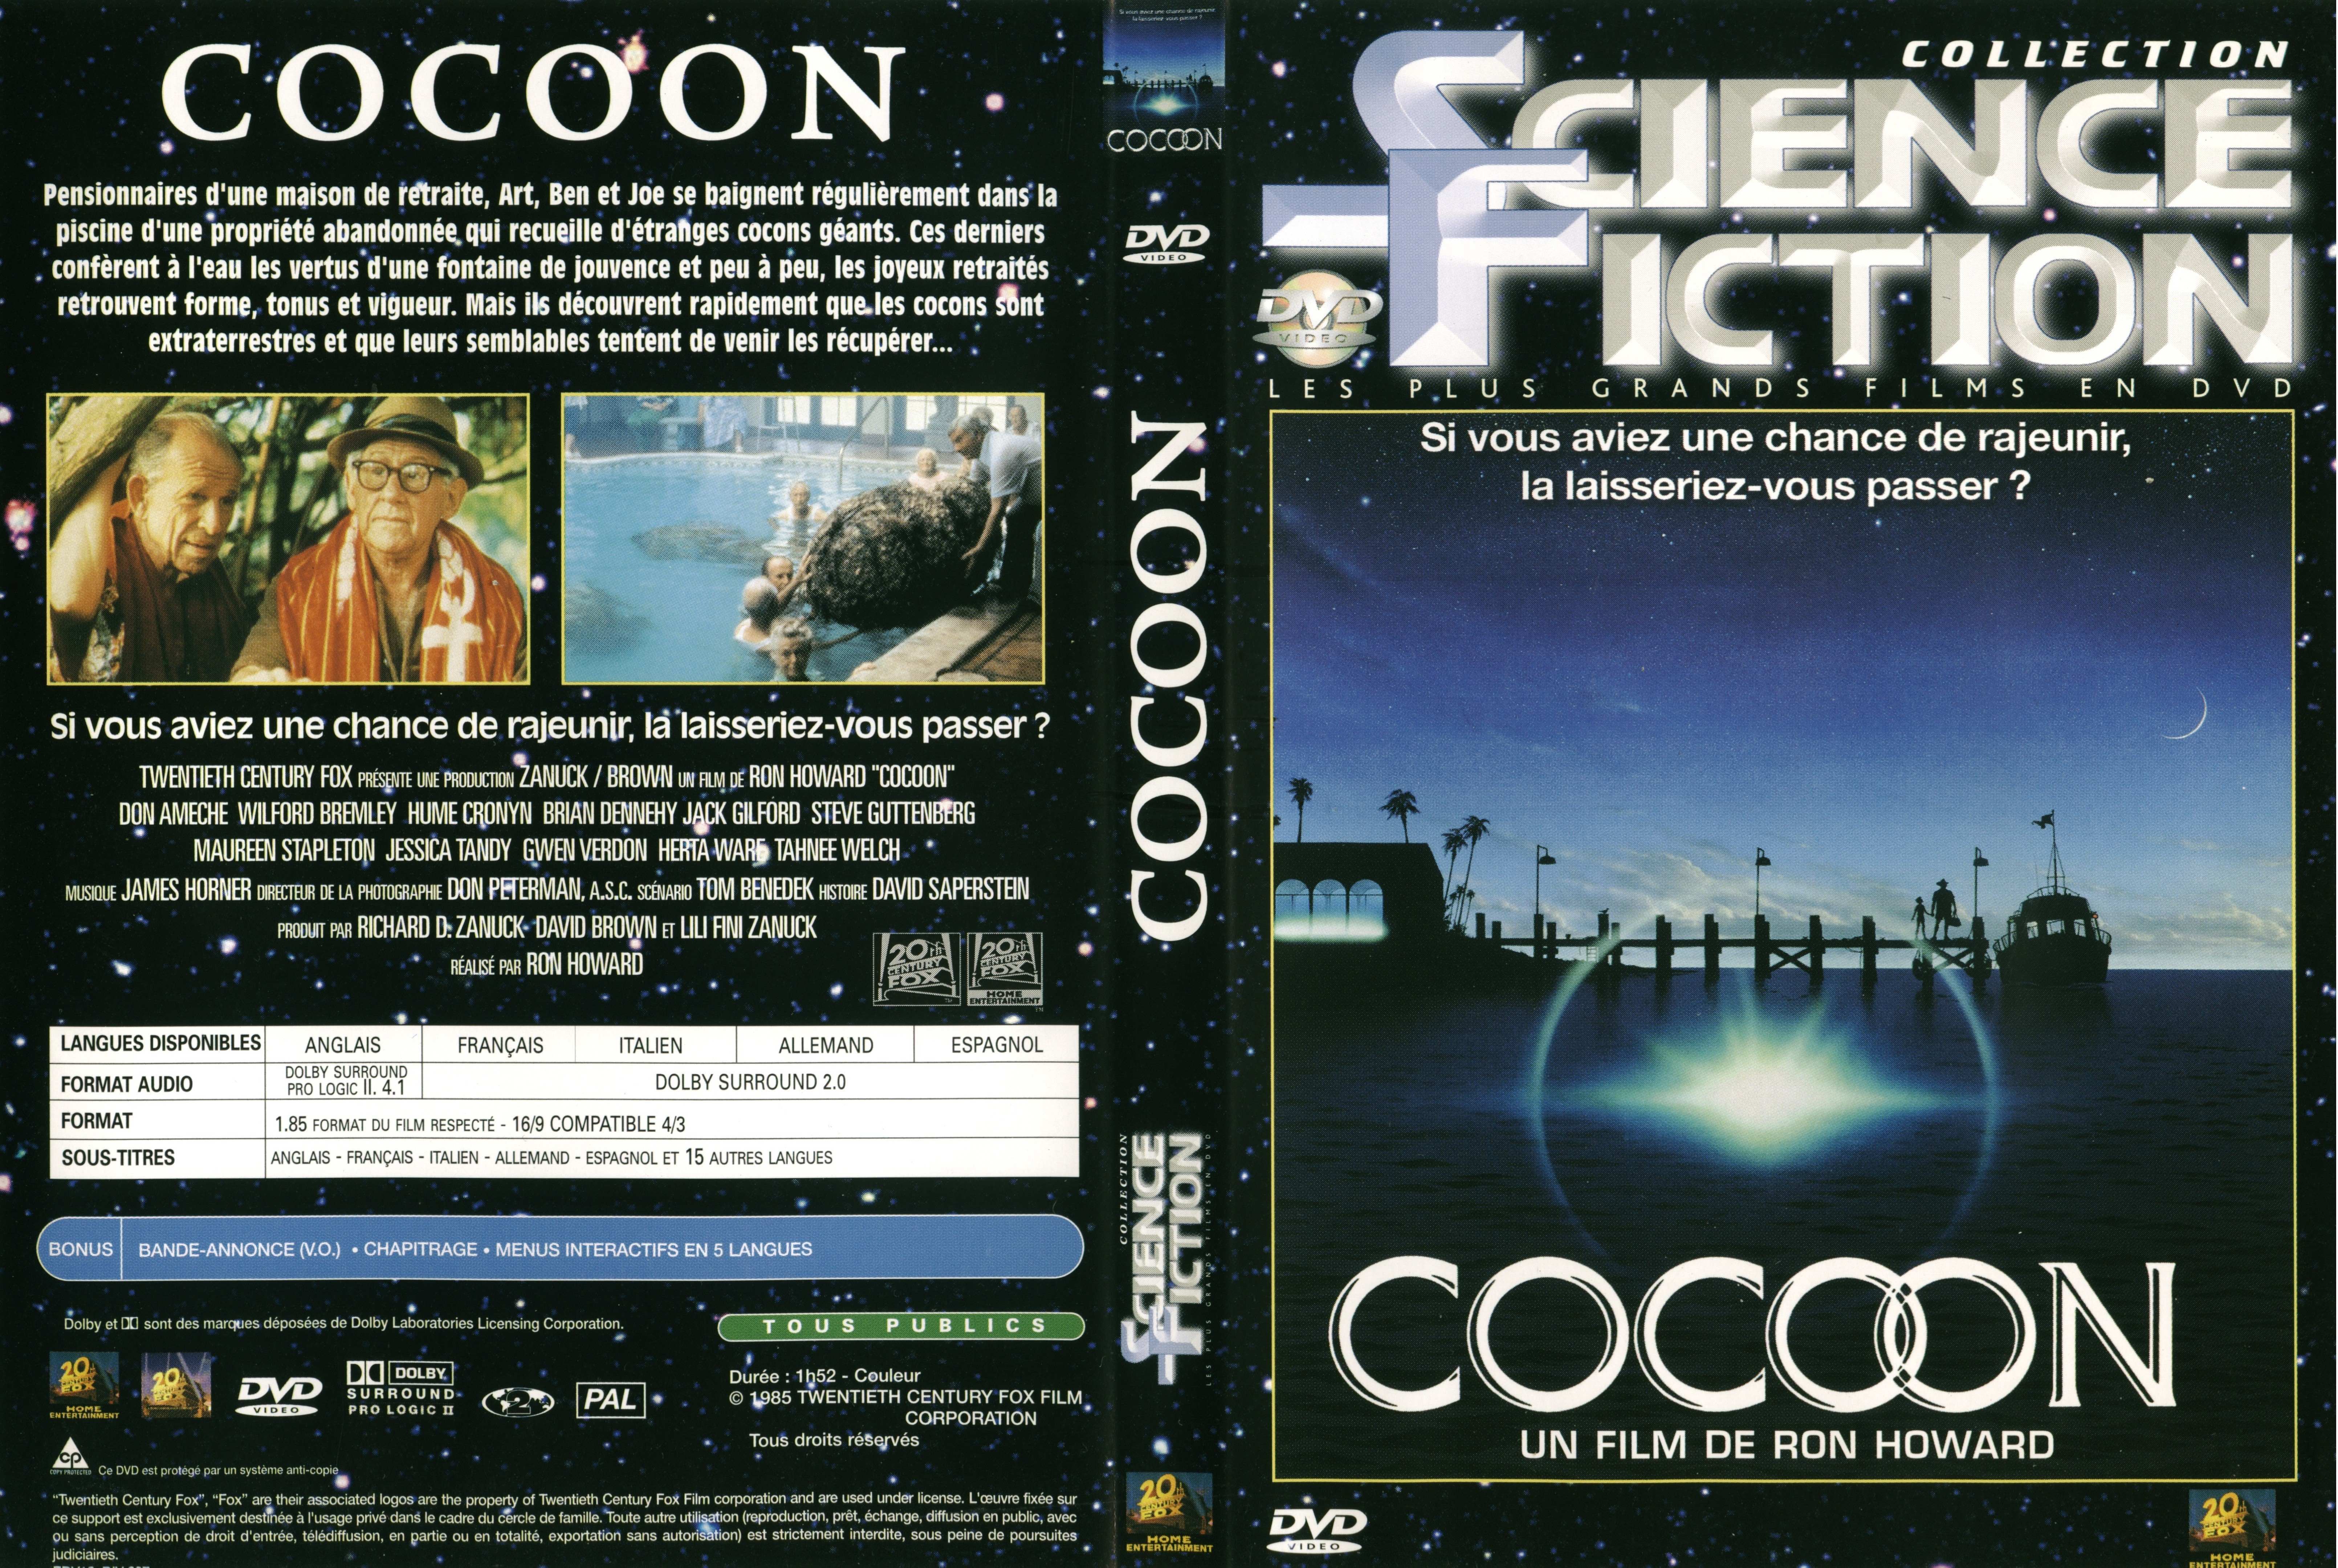 Jaquette DVD Cocoon v2